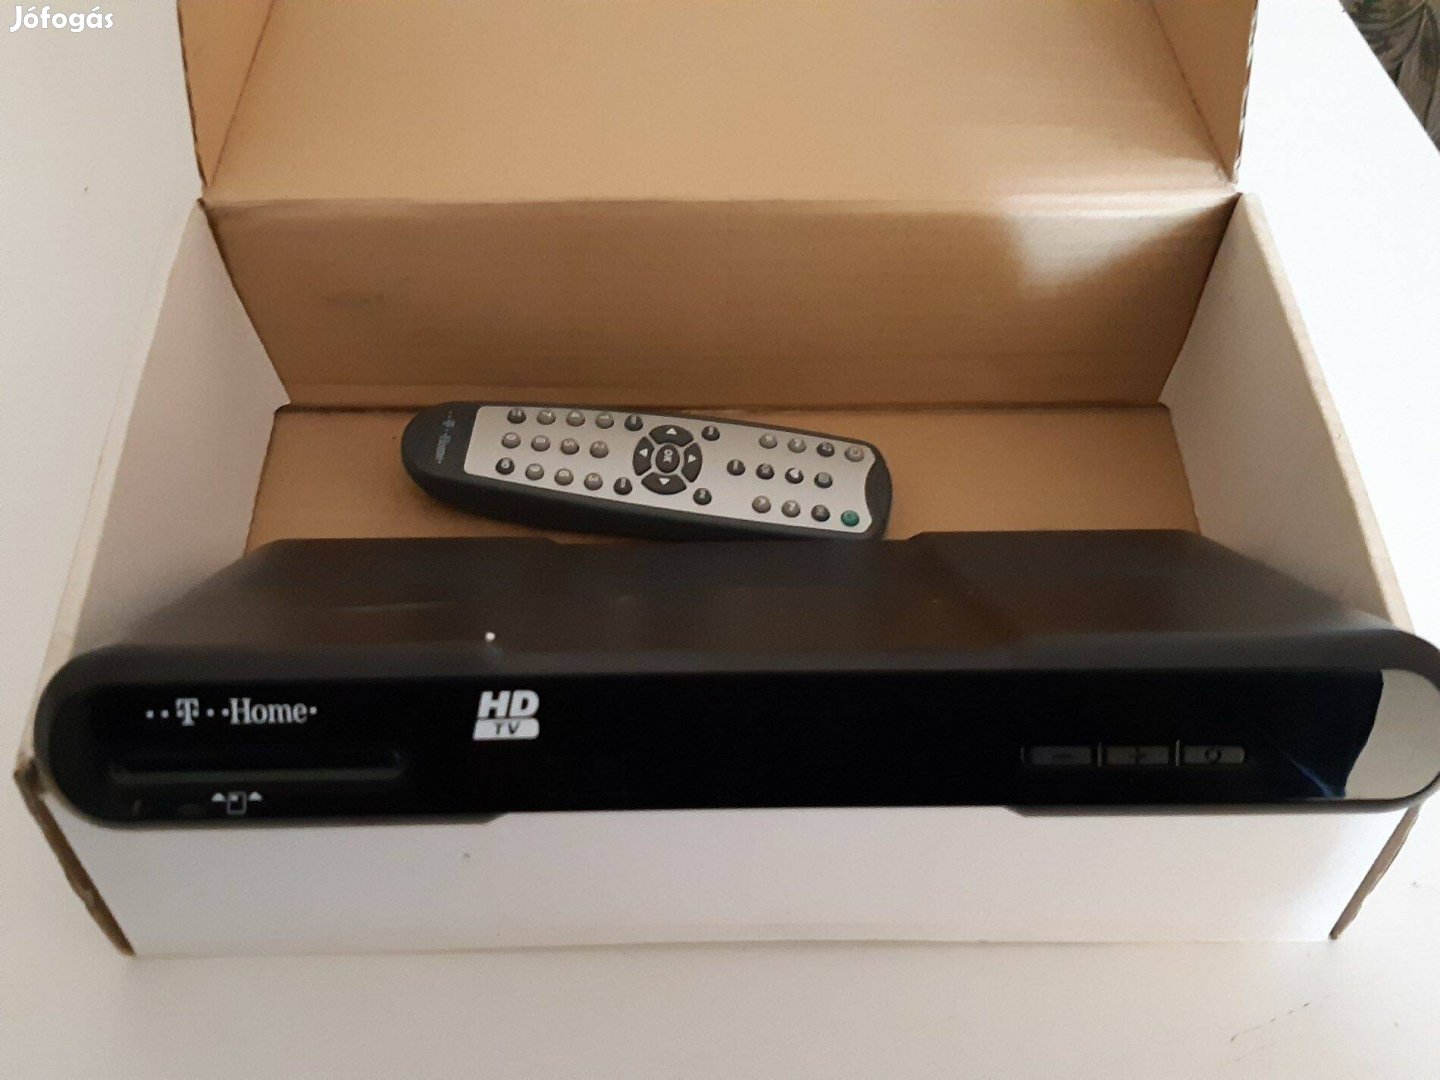 T-Home HD TV digitális beltéri egység távirányítóval működő